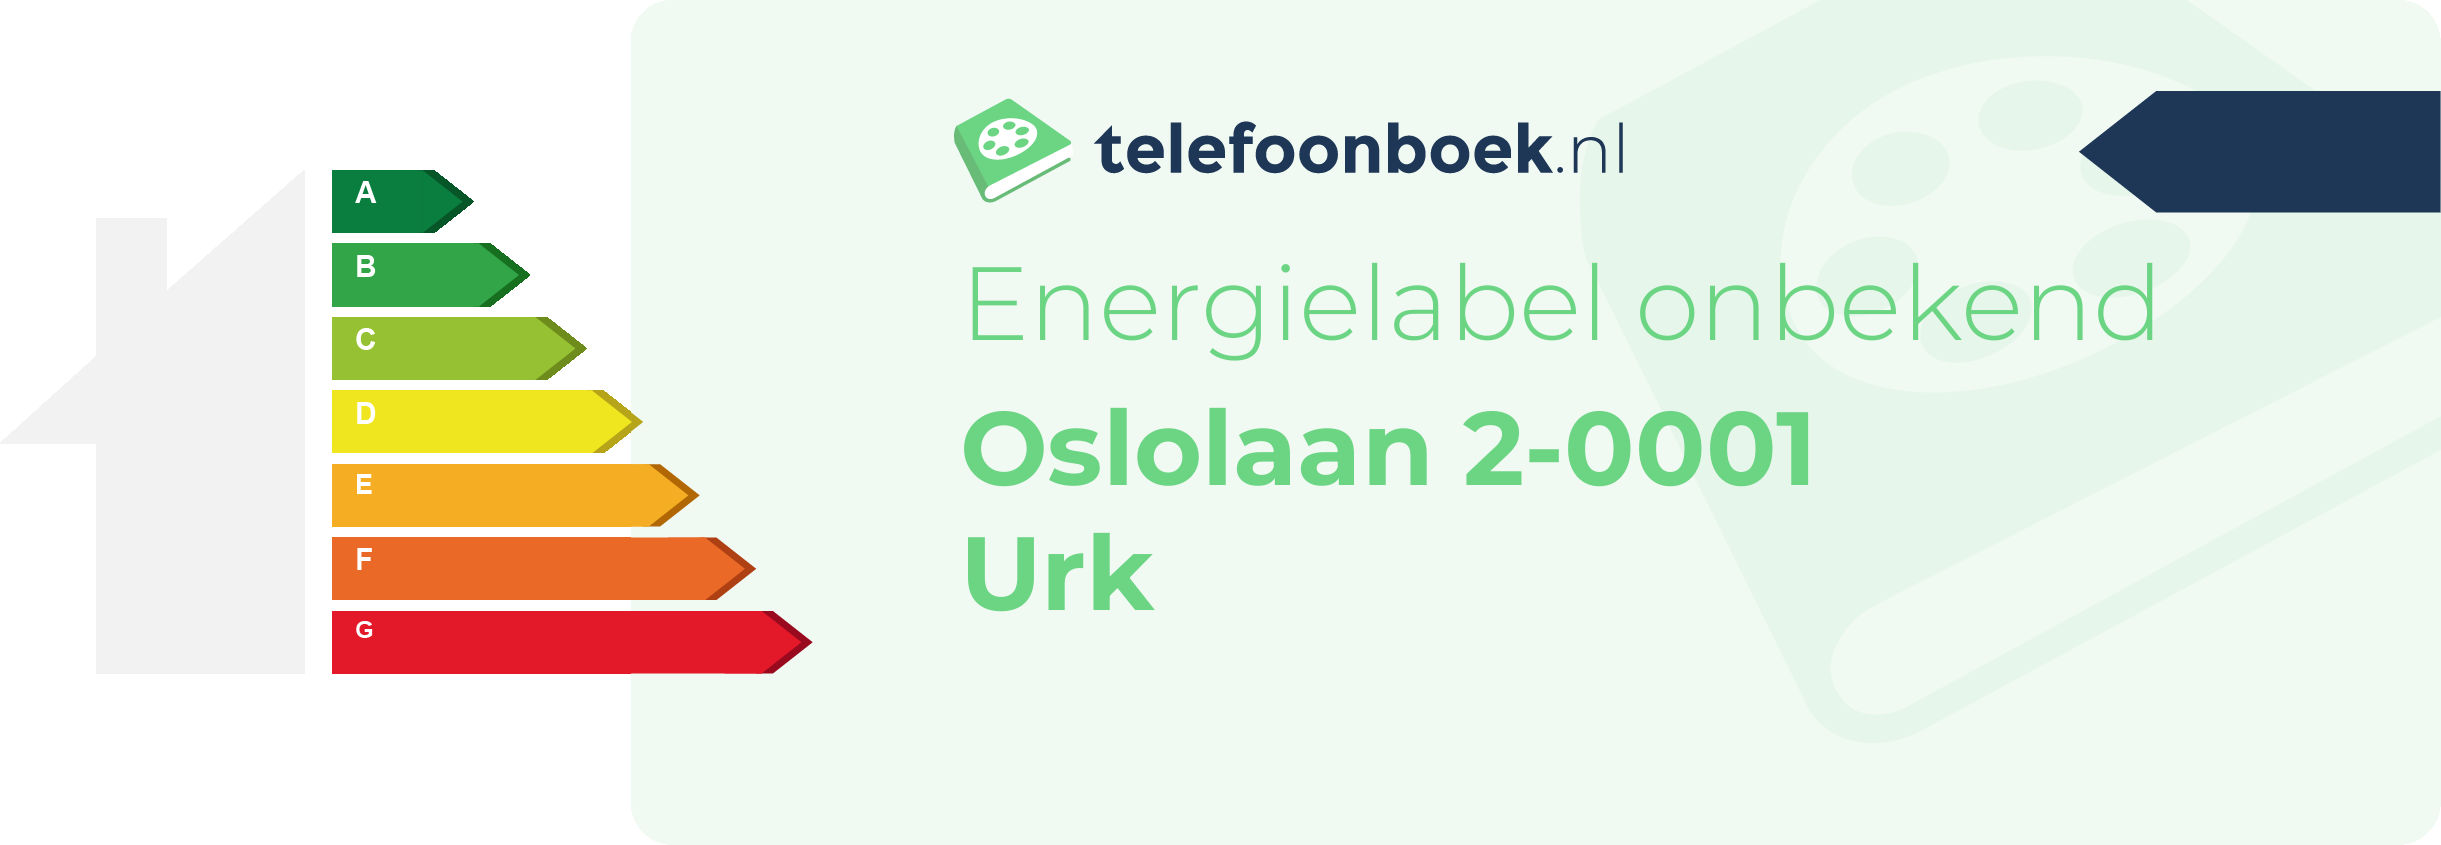 Energielabel Oslolaan 2-0001 Urk